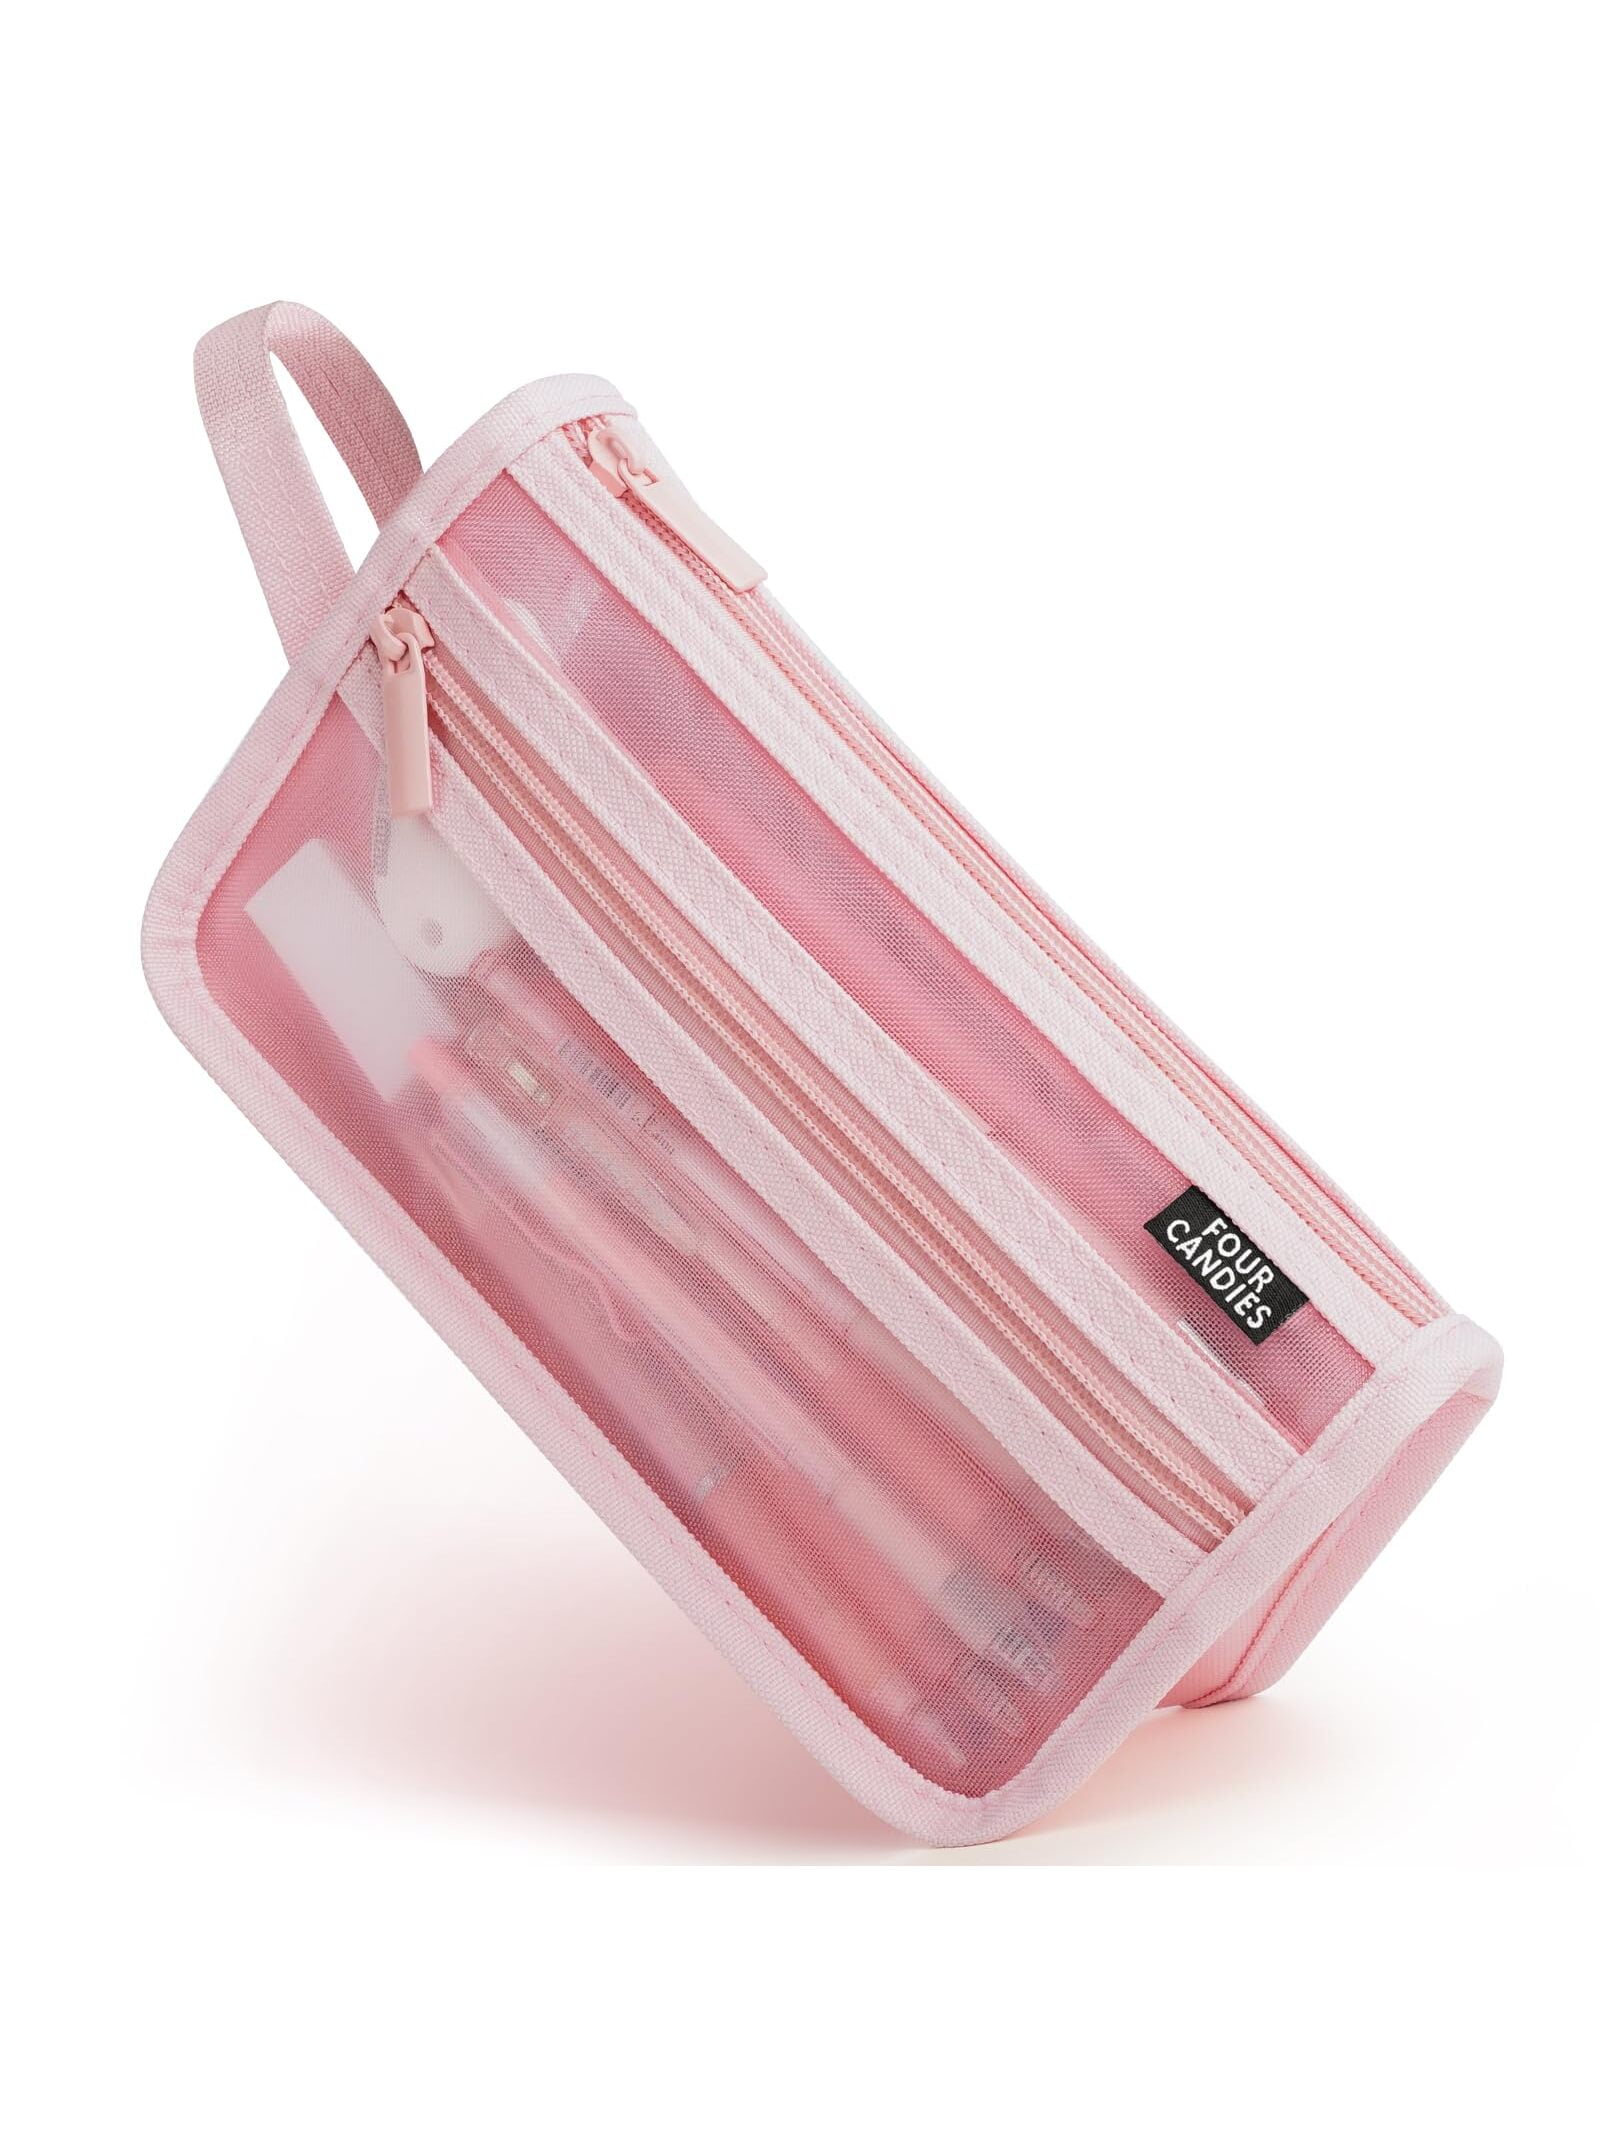 L.O.L Surprise Pink Hard Pencil Case 